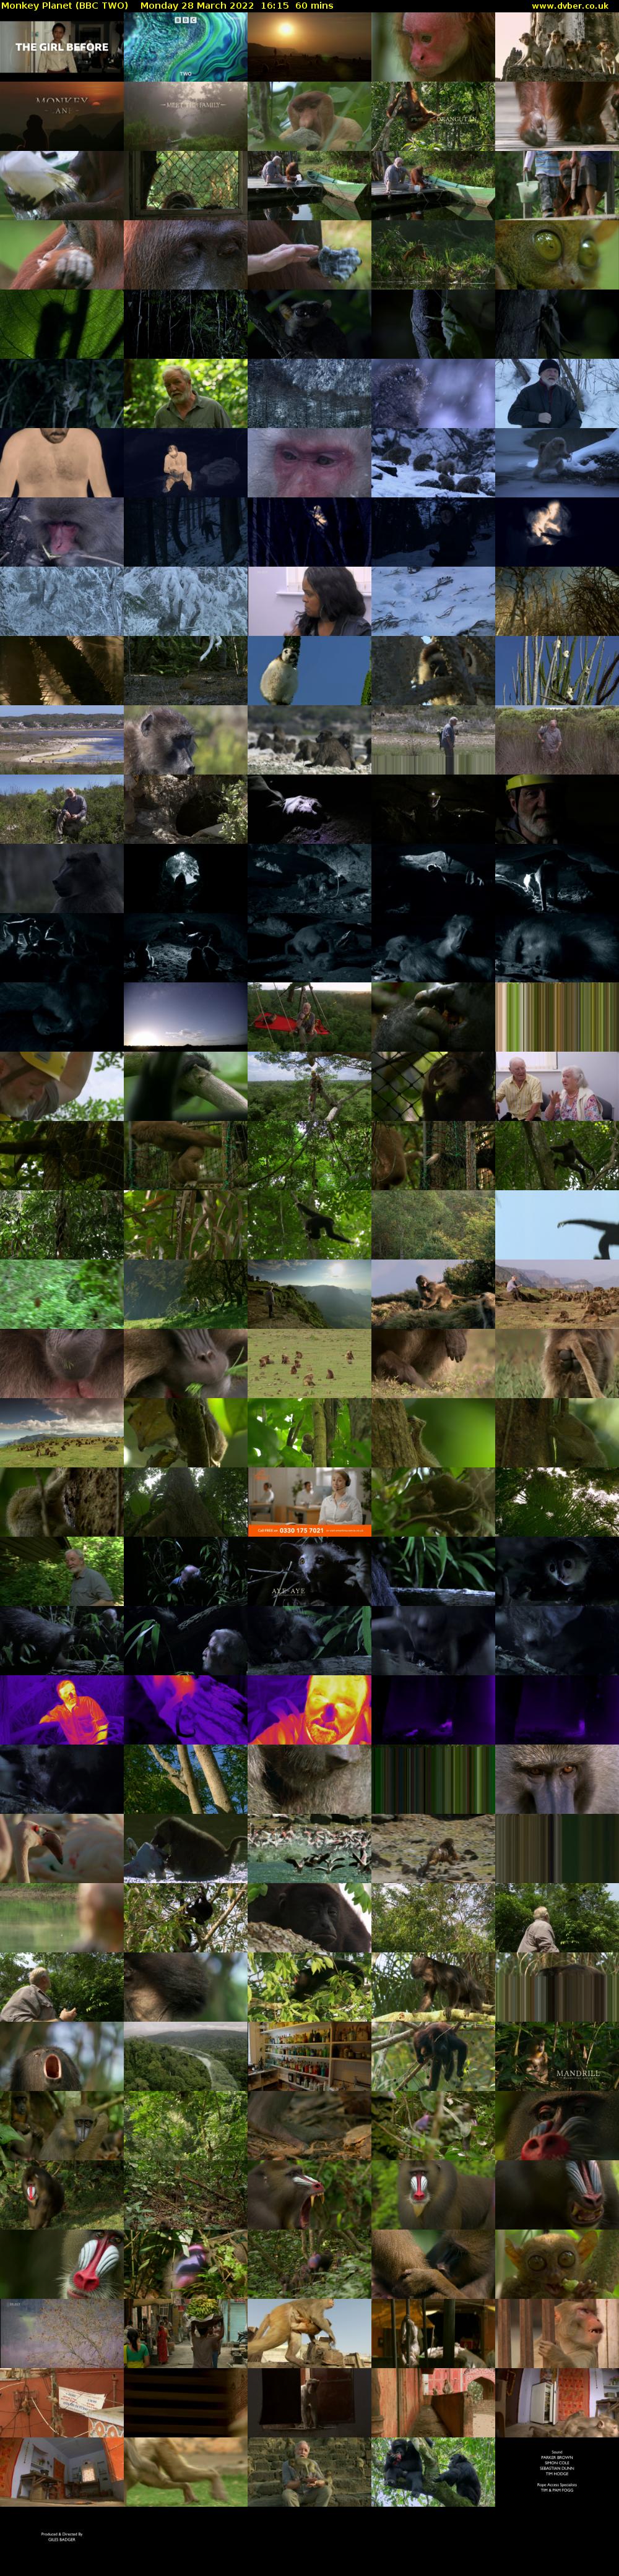 Monkey Planet (BBC TWO) Monday 28 March 2022 16:15 - 17:15